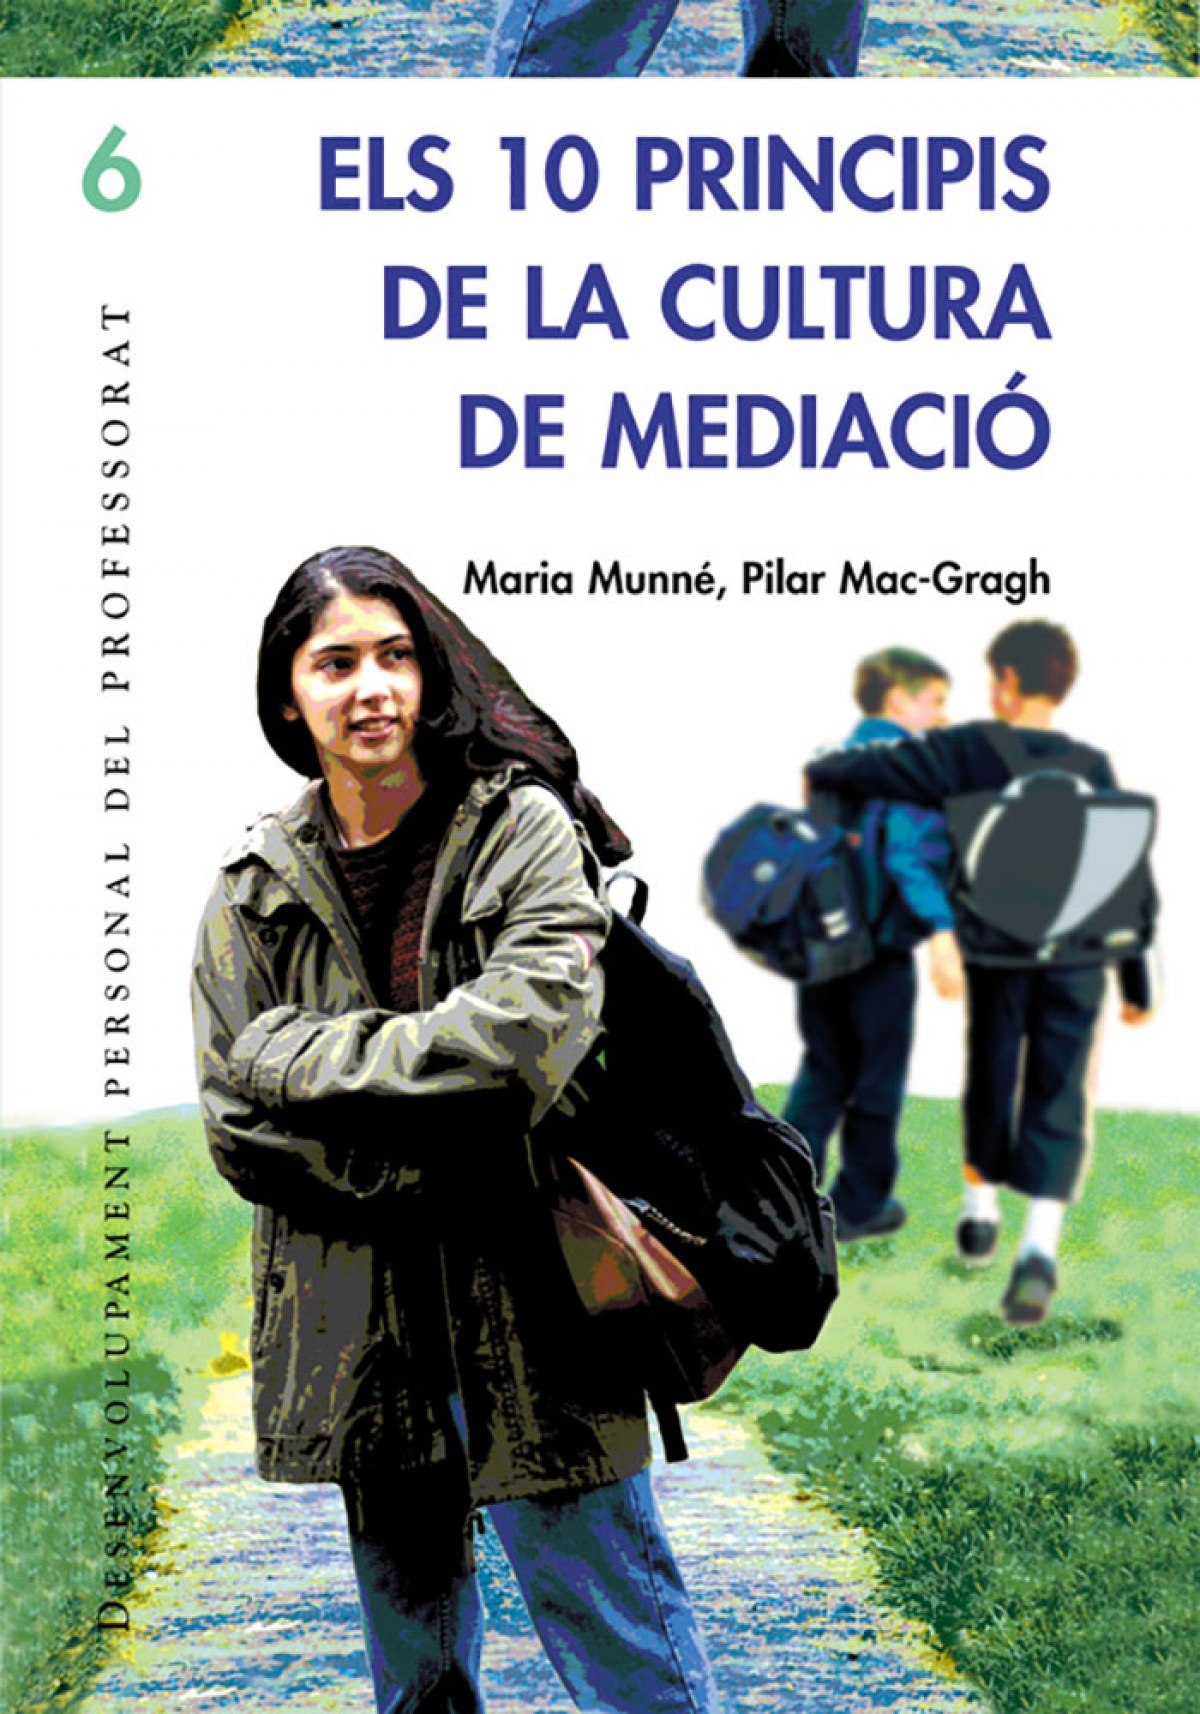 Els 10 principis de la cultura de mediacio - Munne, Maria/Mac-cragh, Pilar